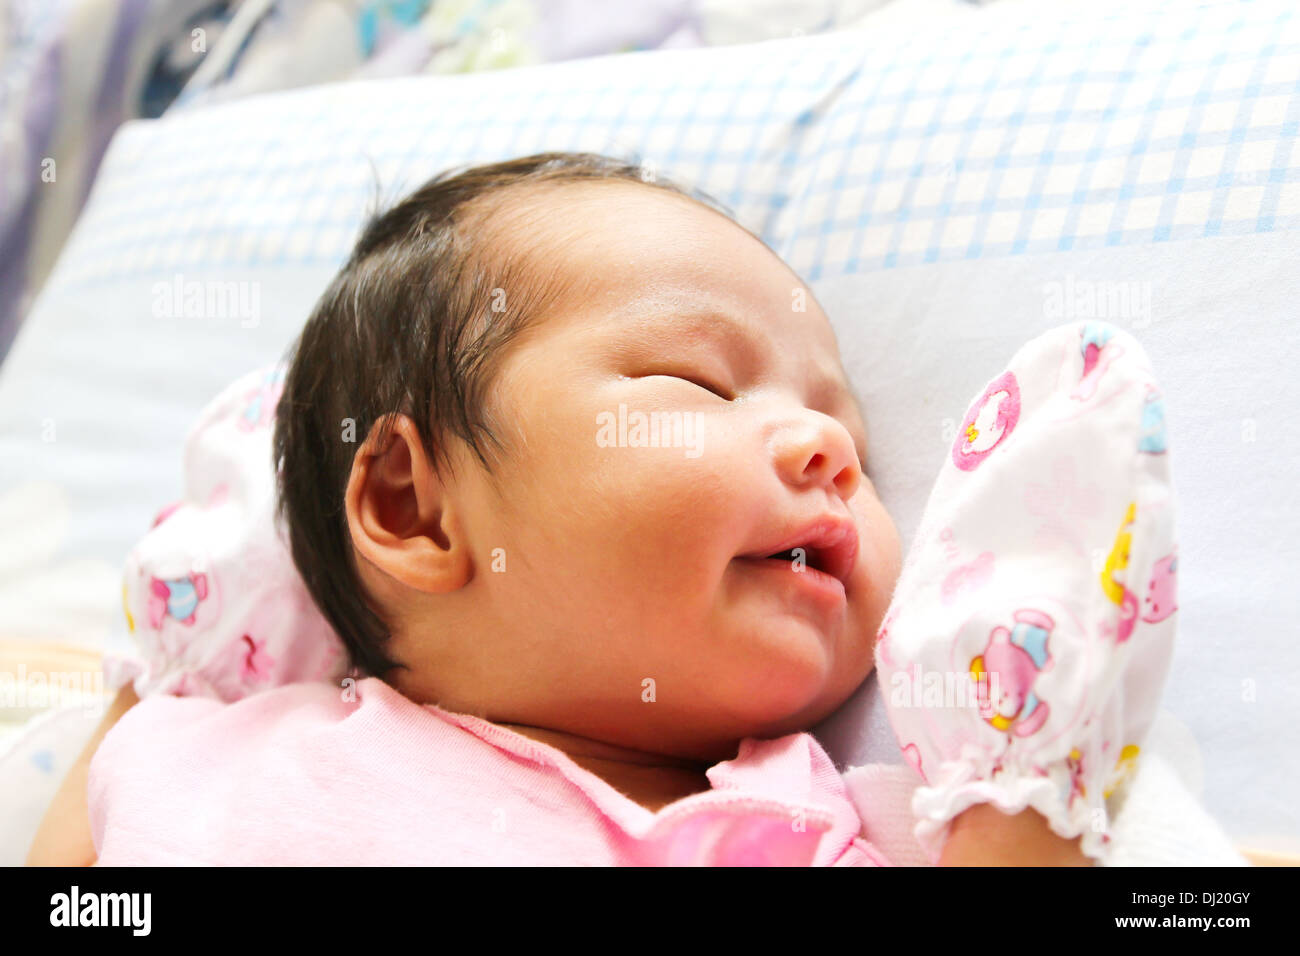 Newborn Asian baby girl sleeping Stock Photo